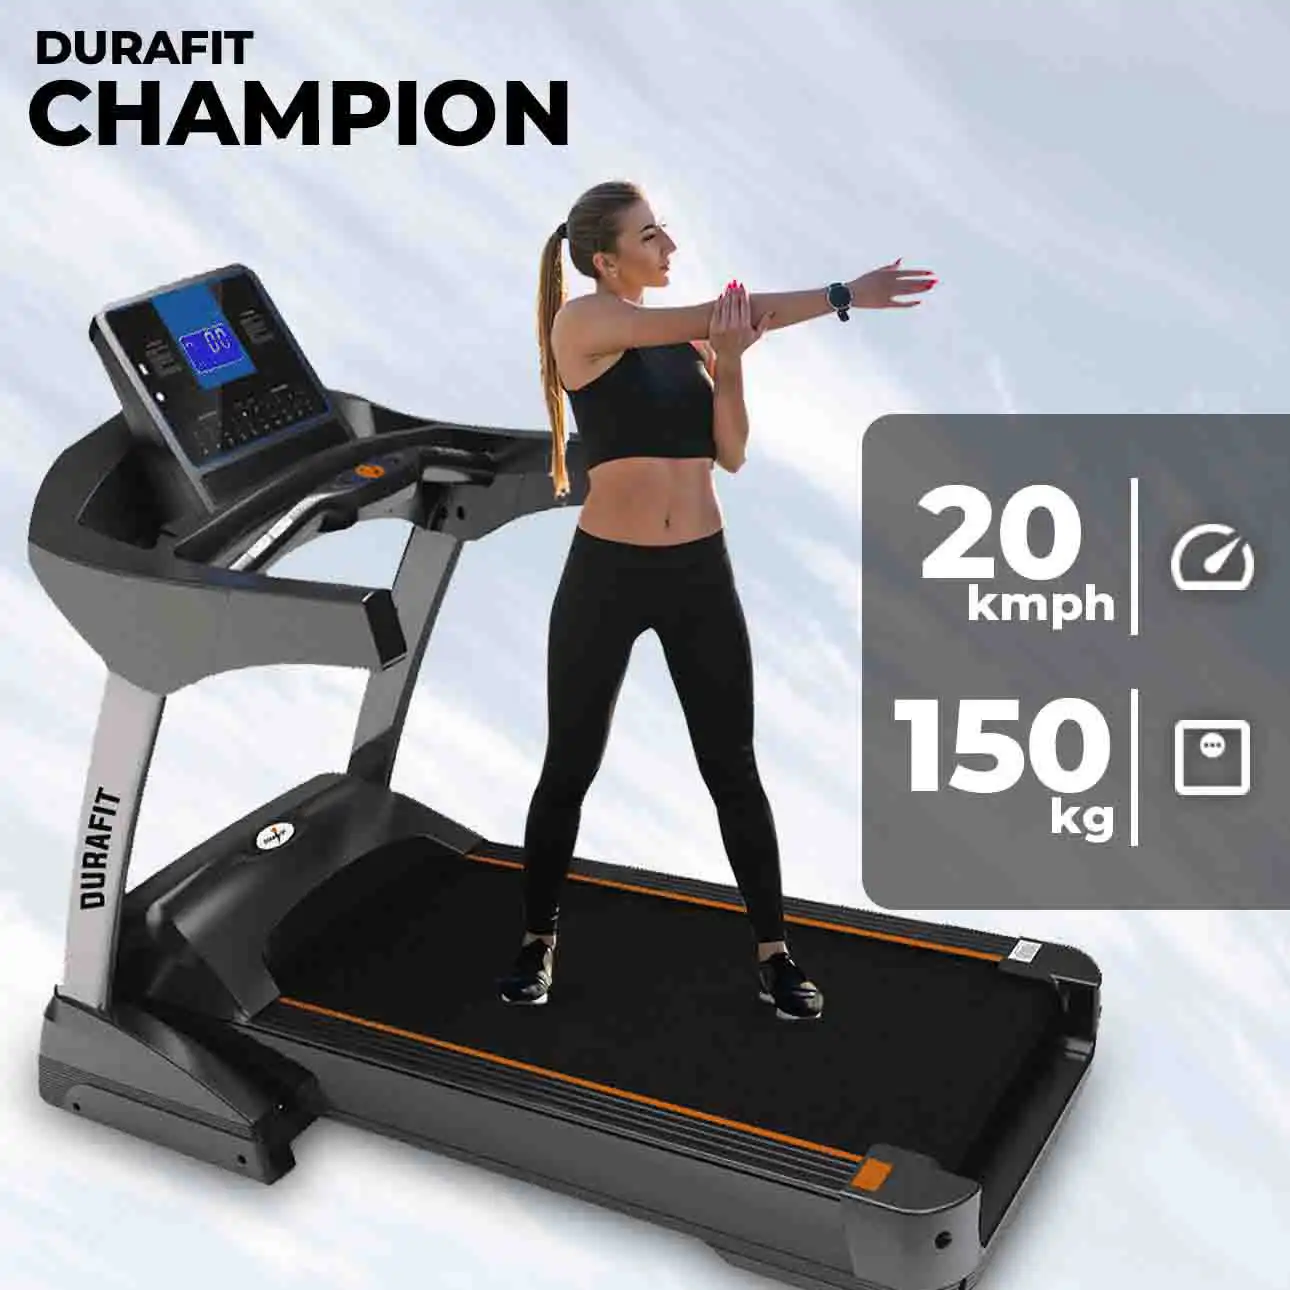 Durafit Champion Treadmill 150kg Max User Weight